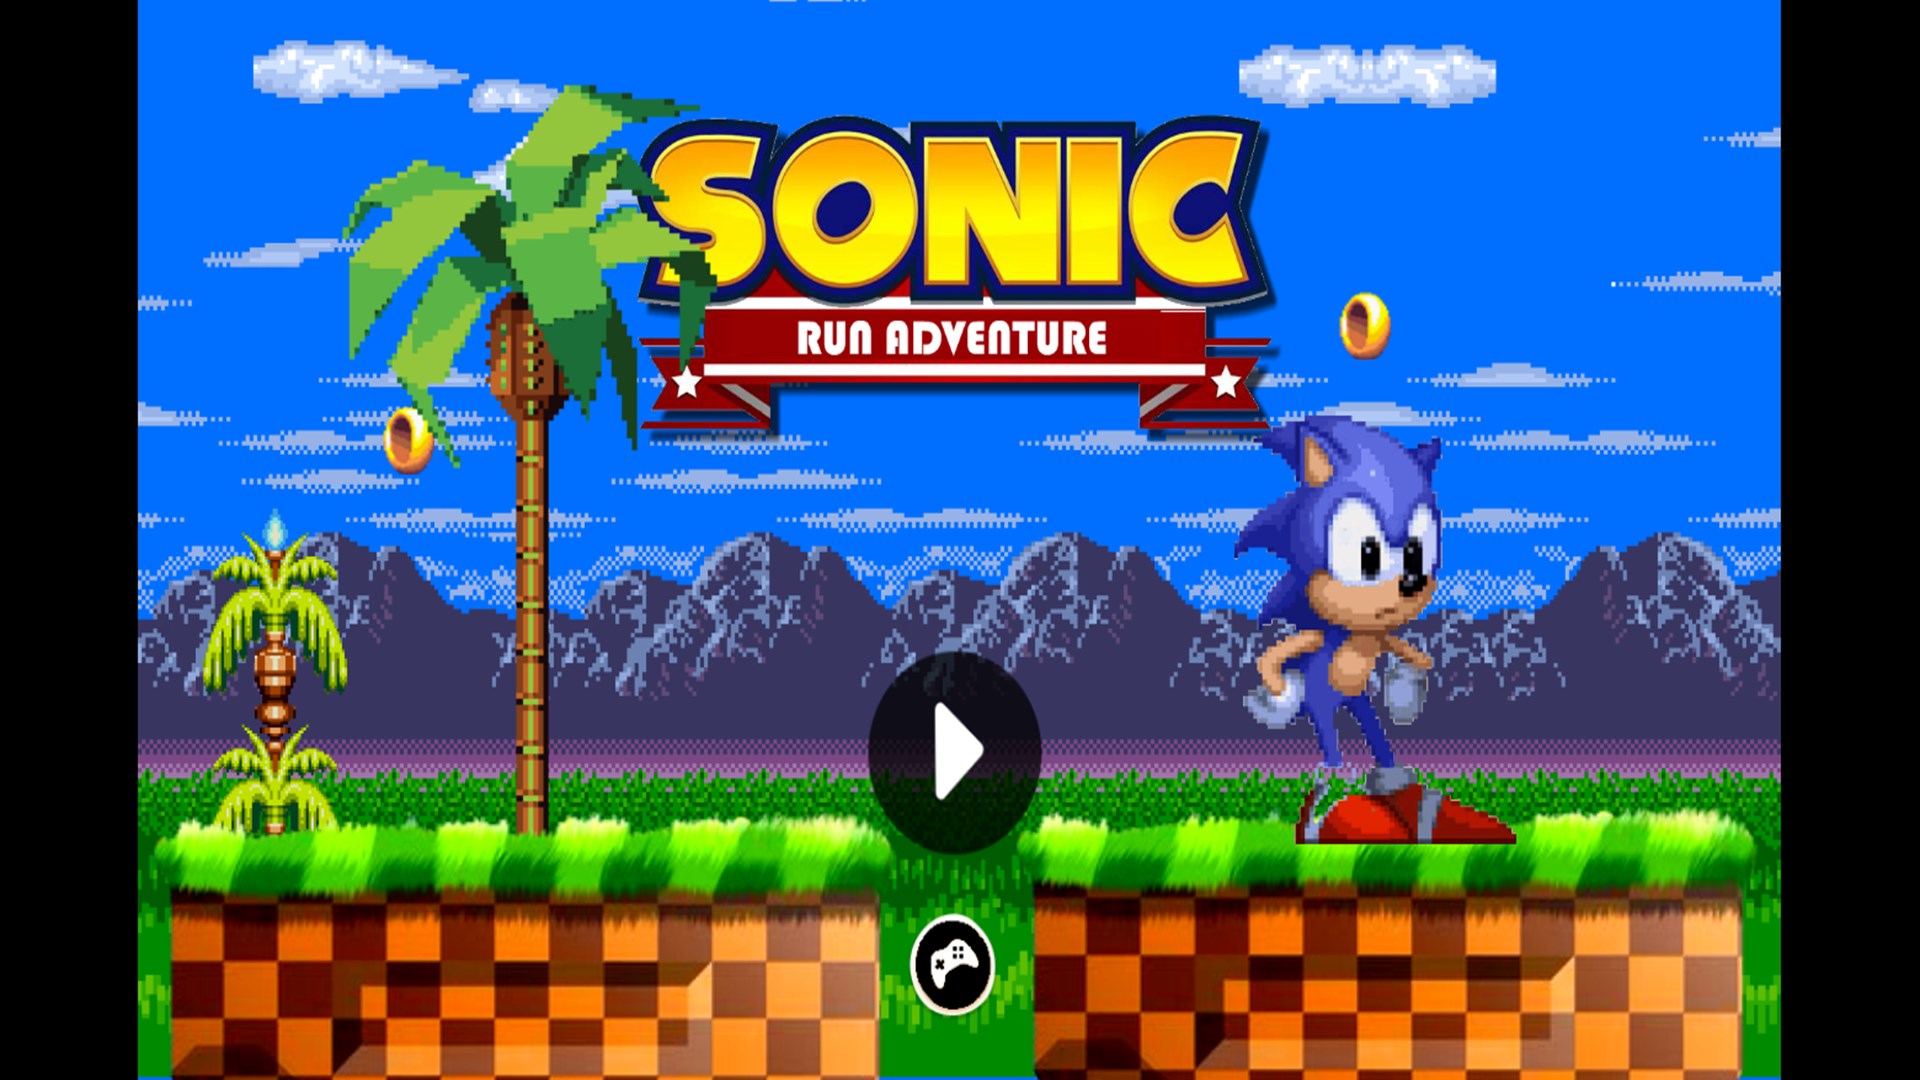 Những màn chạy nảy lửa trong Sonic Run Adventure sẽ khiến bạn cảm thấy như lạc vào một thế giới thần tiên. Hãy tham gia cuộc phiêu lưu đầy thú vị này và trải nghiệm những giây phút không thể quên bên siêu chim cánh cụt Sonic.